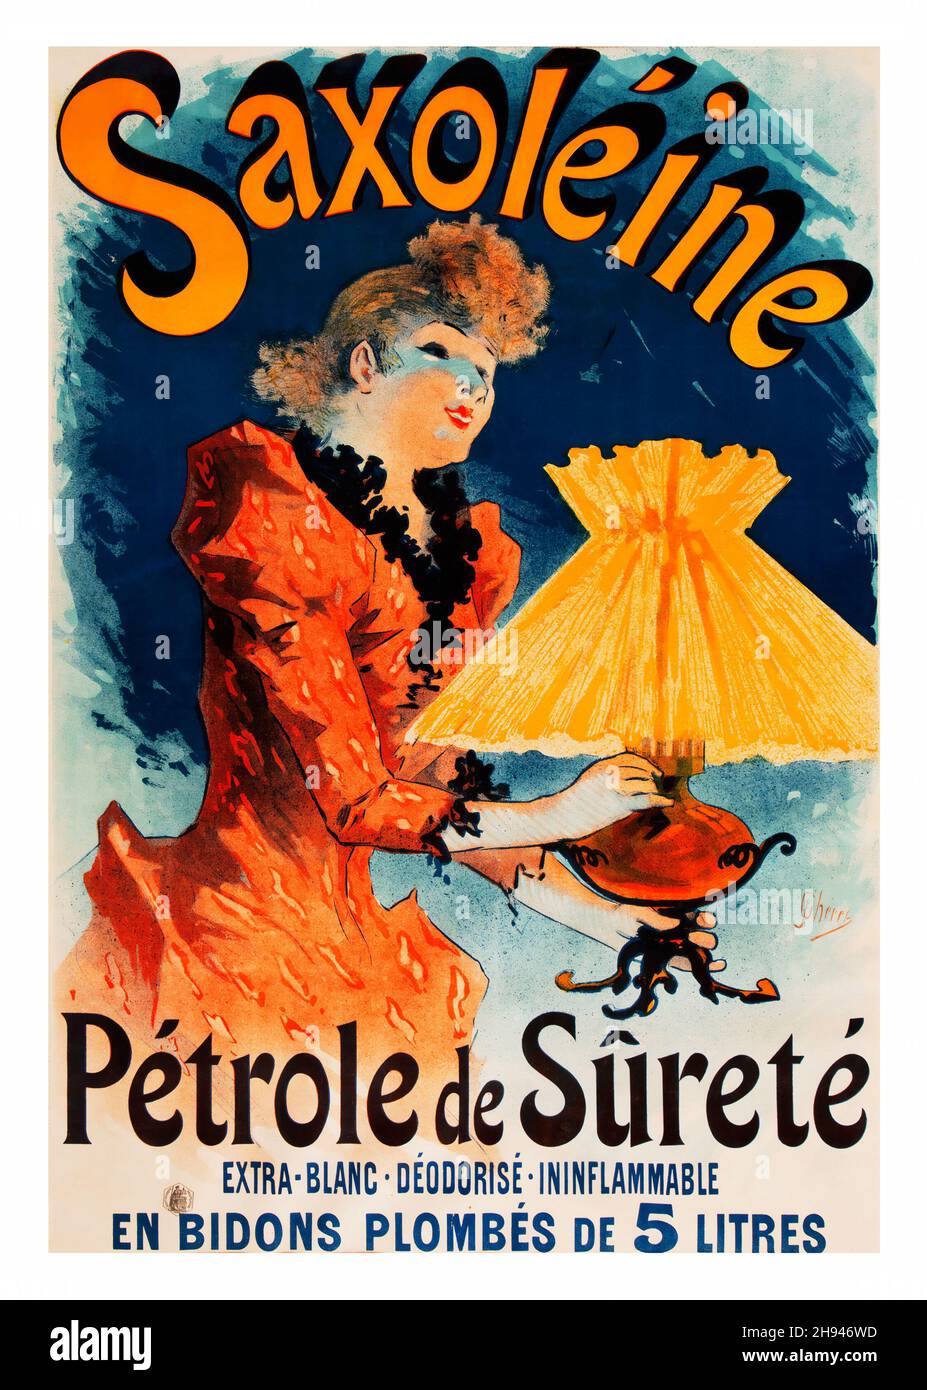 Saxoleine, Petrole de Surete, 1891 - Poster art by Jules Chéret (1836-1932). French Advertising. Stock Photo